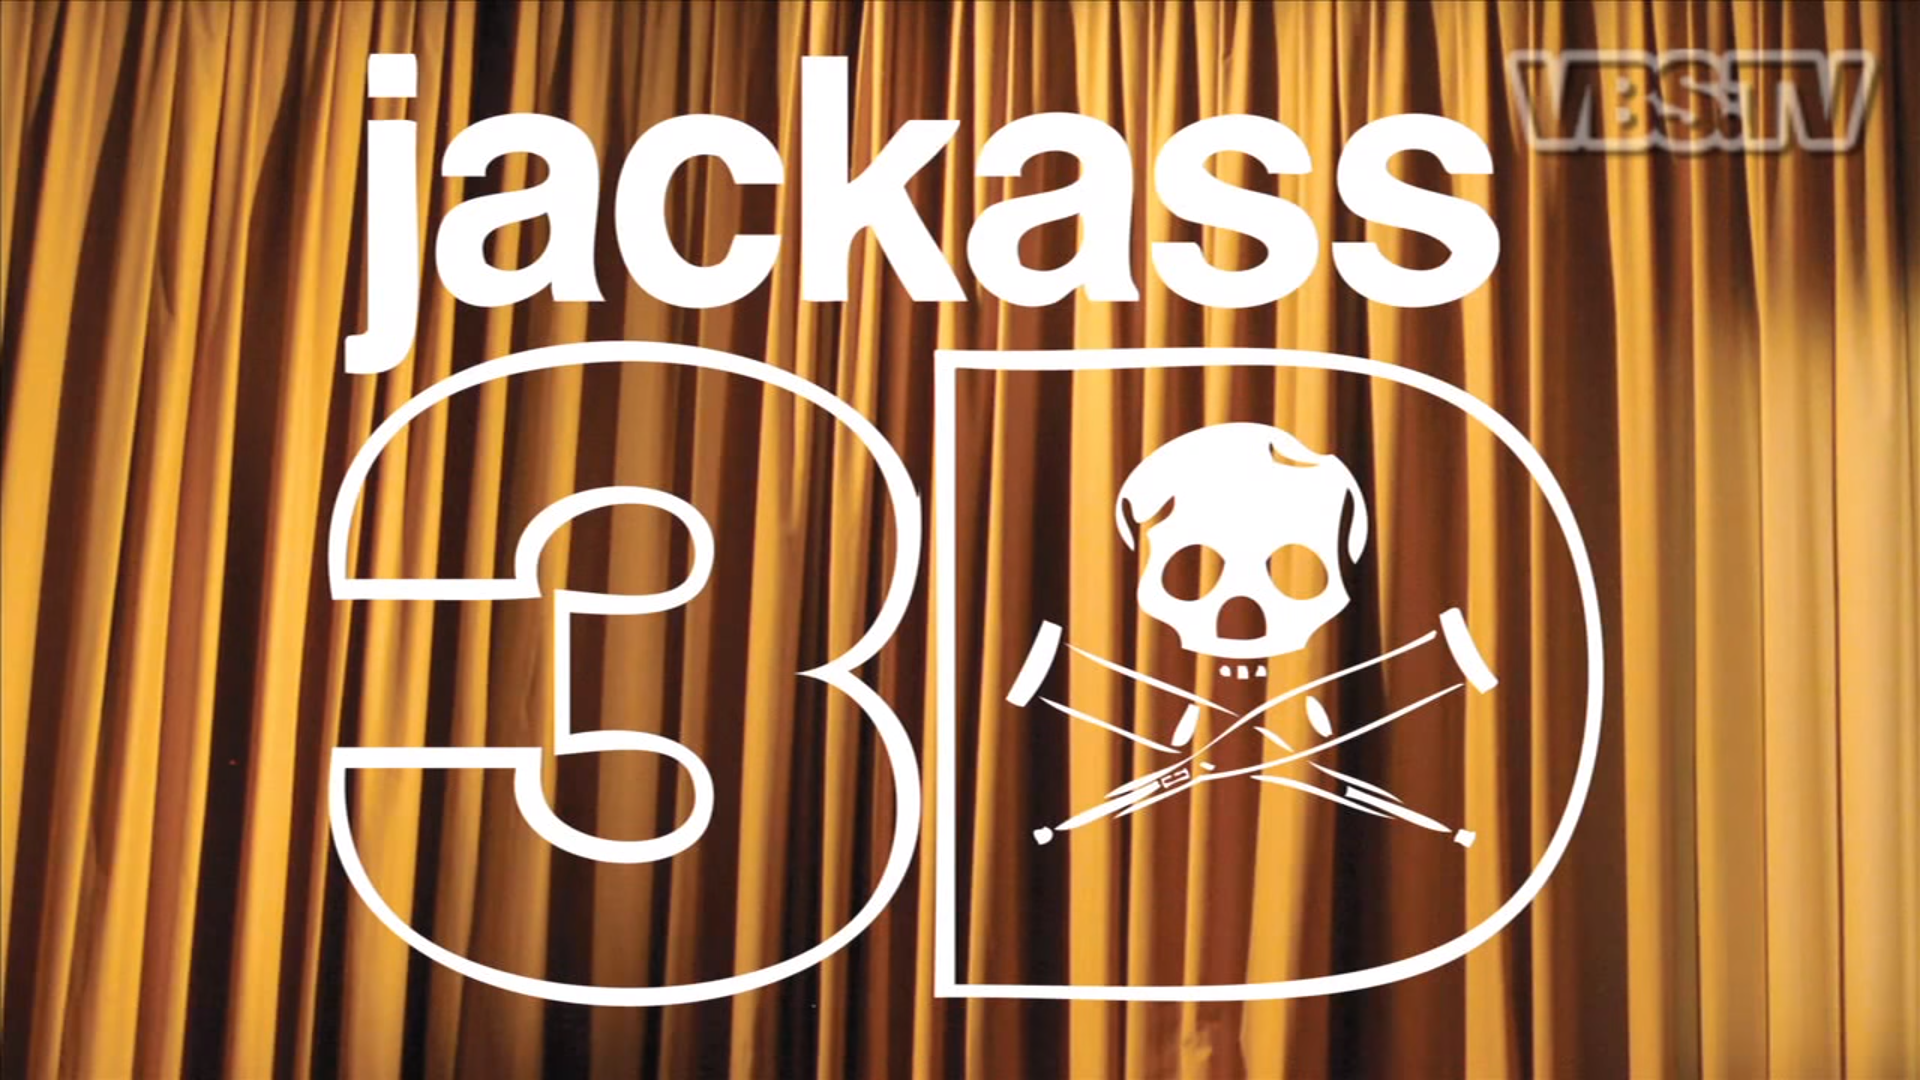 jackass logo 3d